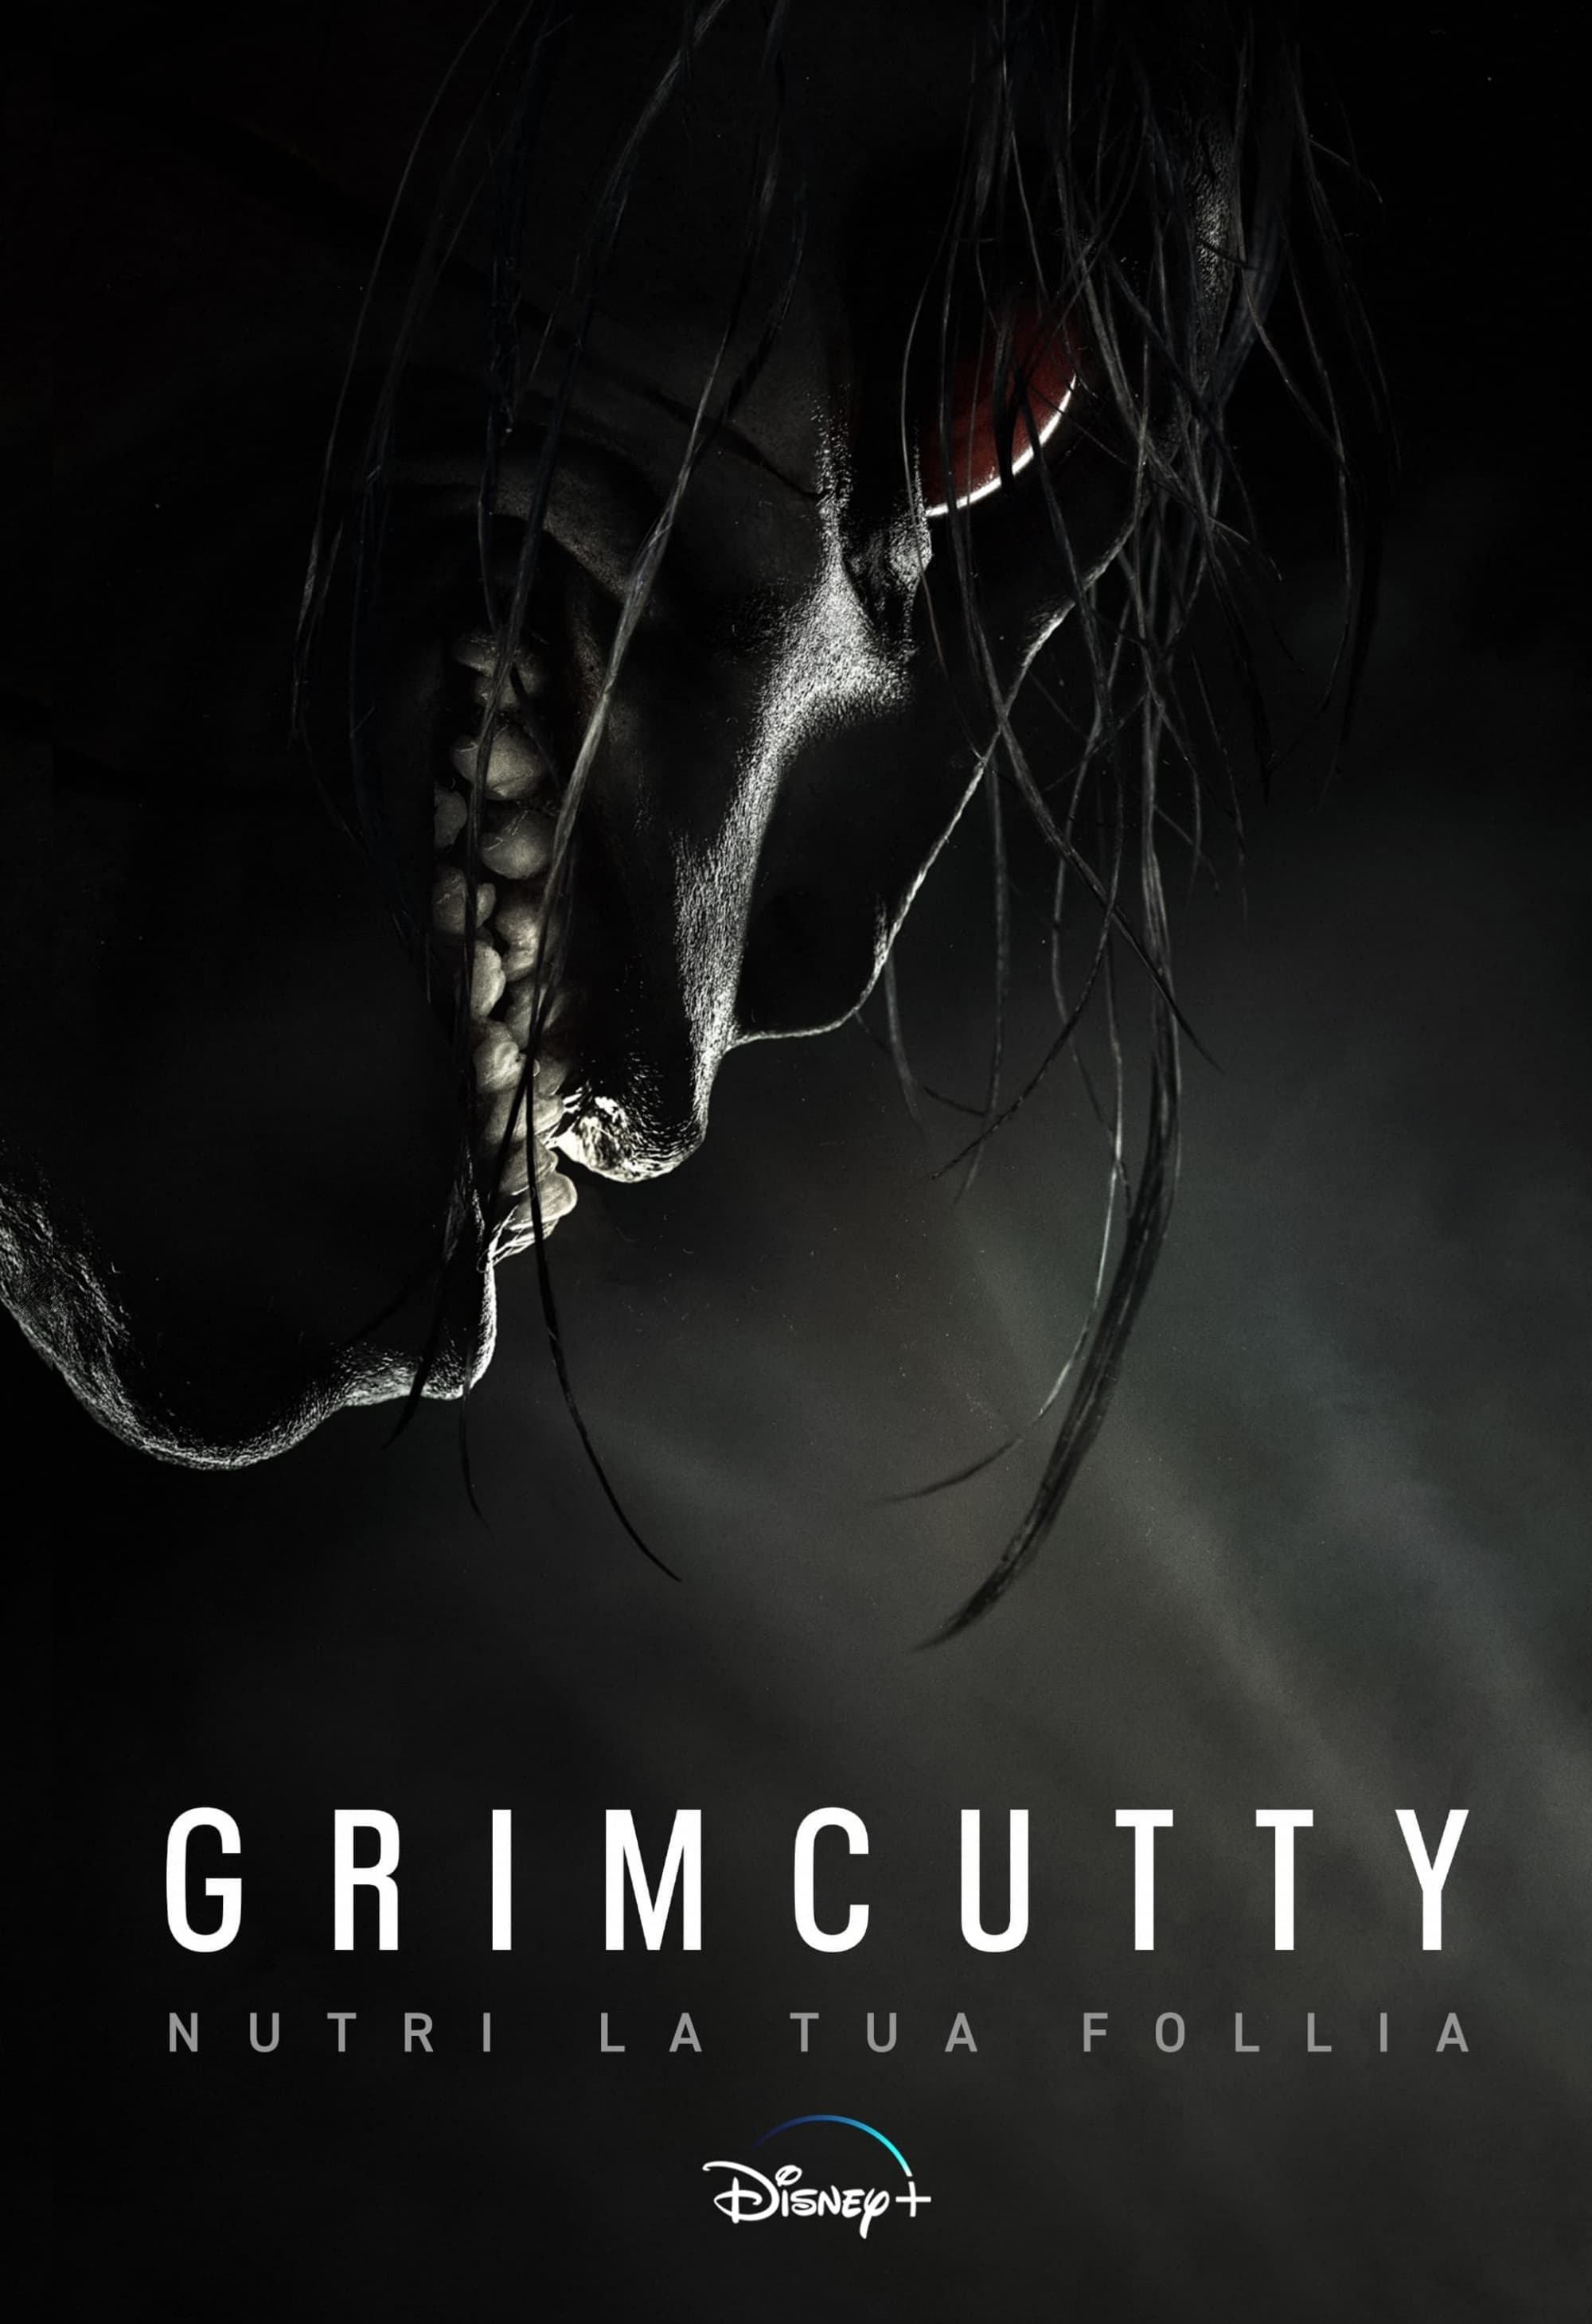 Grimcutty - Nutri la tua follia: la recensione del film horror diretto da  John Ross (su Disney+) - Il Cineocchio